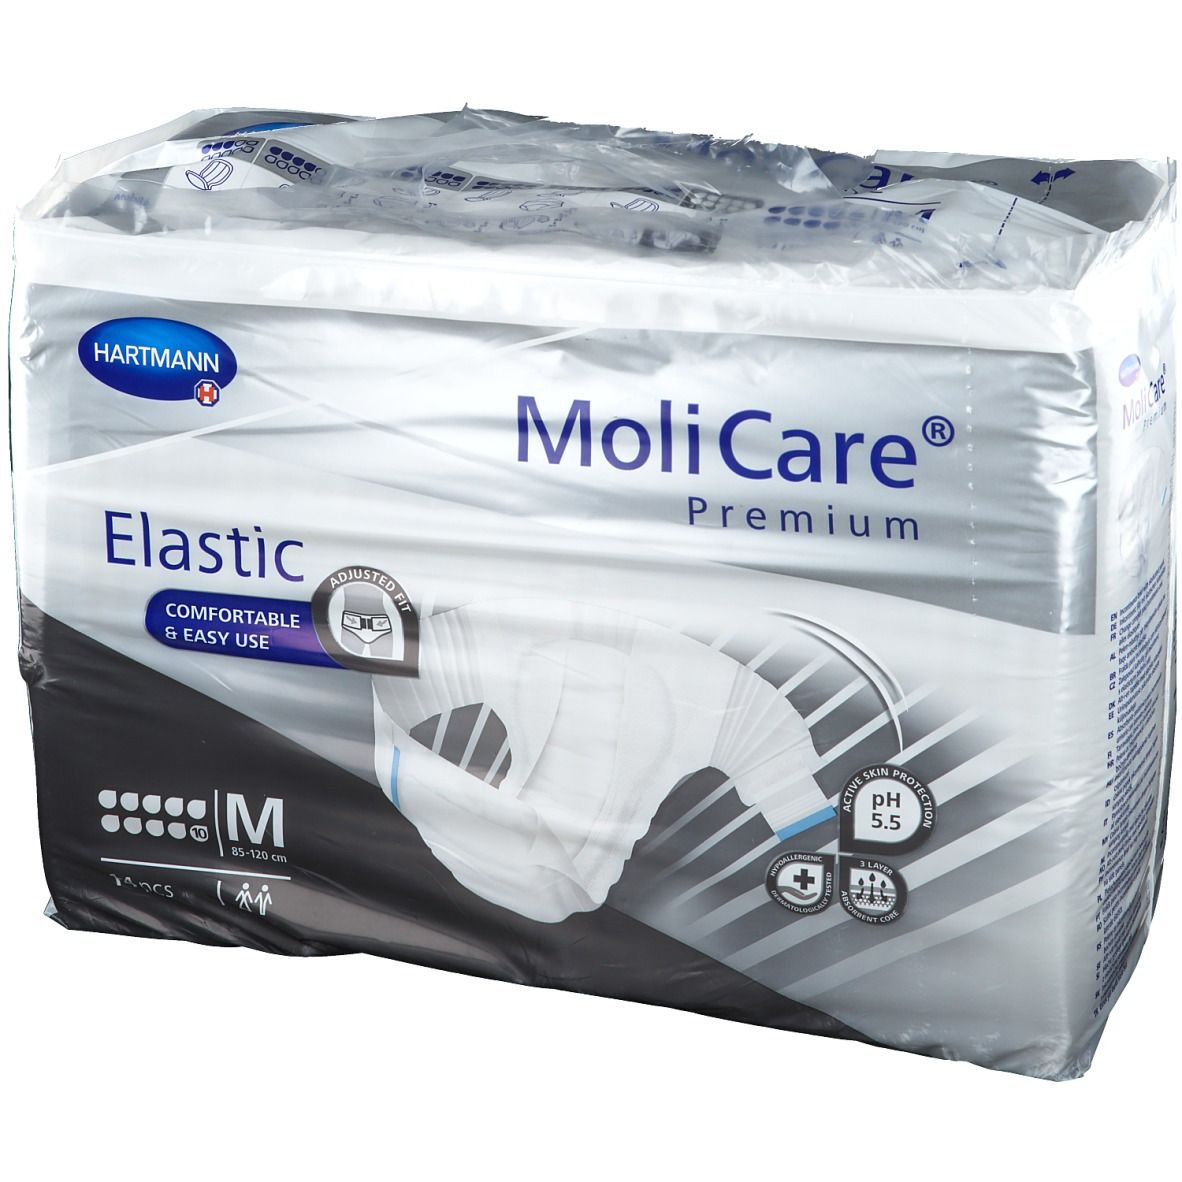 MoliCare® Premium Elastic M